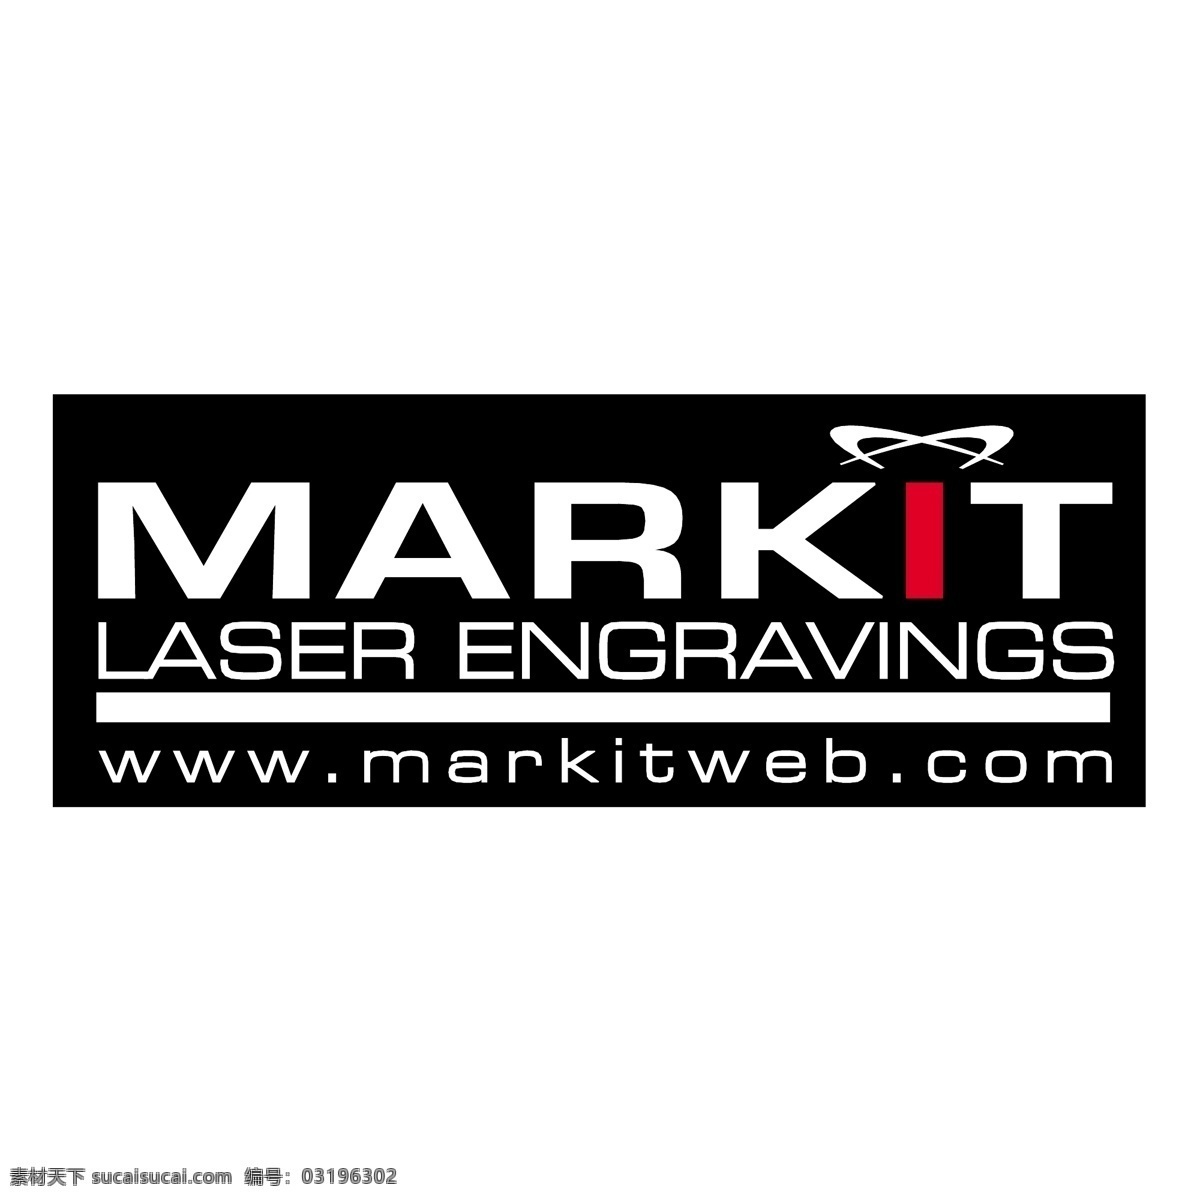 markit 激光雕刻 激光 免费设计 图形设计 免费 矢量 艺术 艺术设计 激光的自由 自由 载体 激光矢量 矢量艺术激光 免费eps eps激光 矢量图 建筑家居